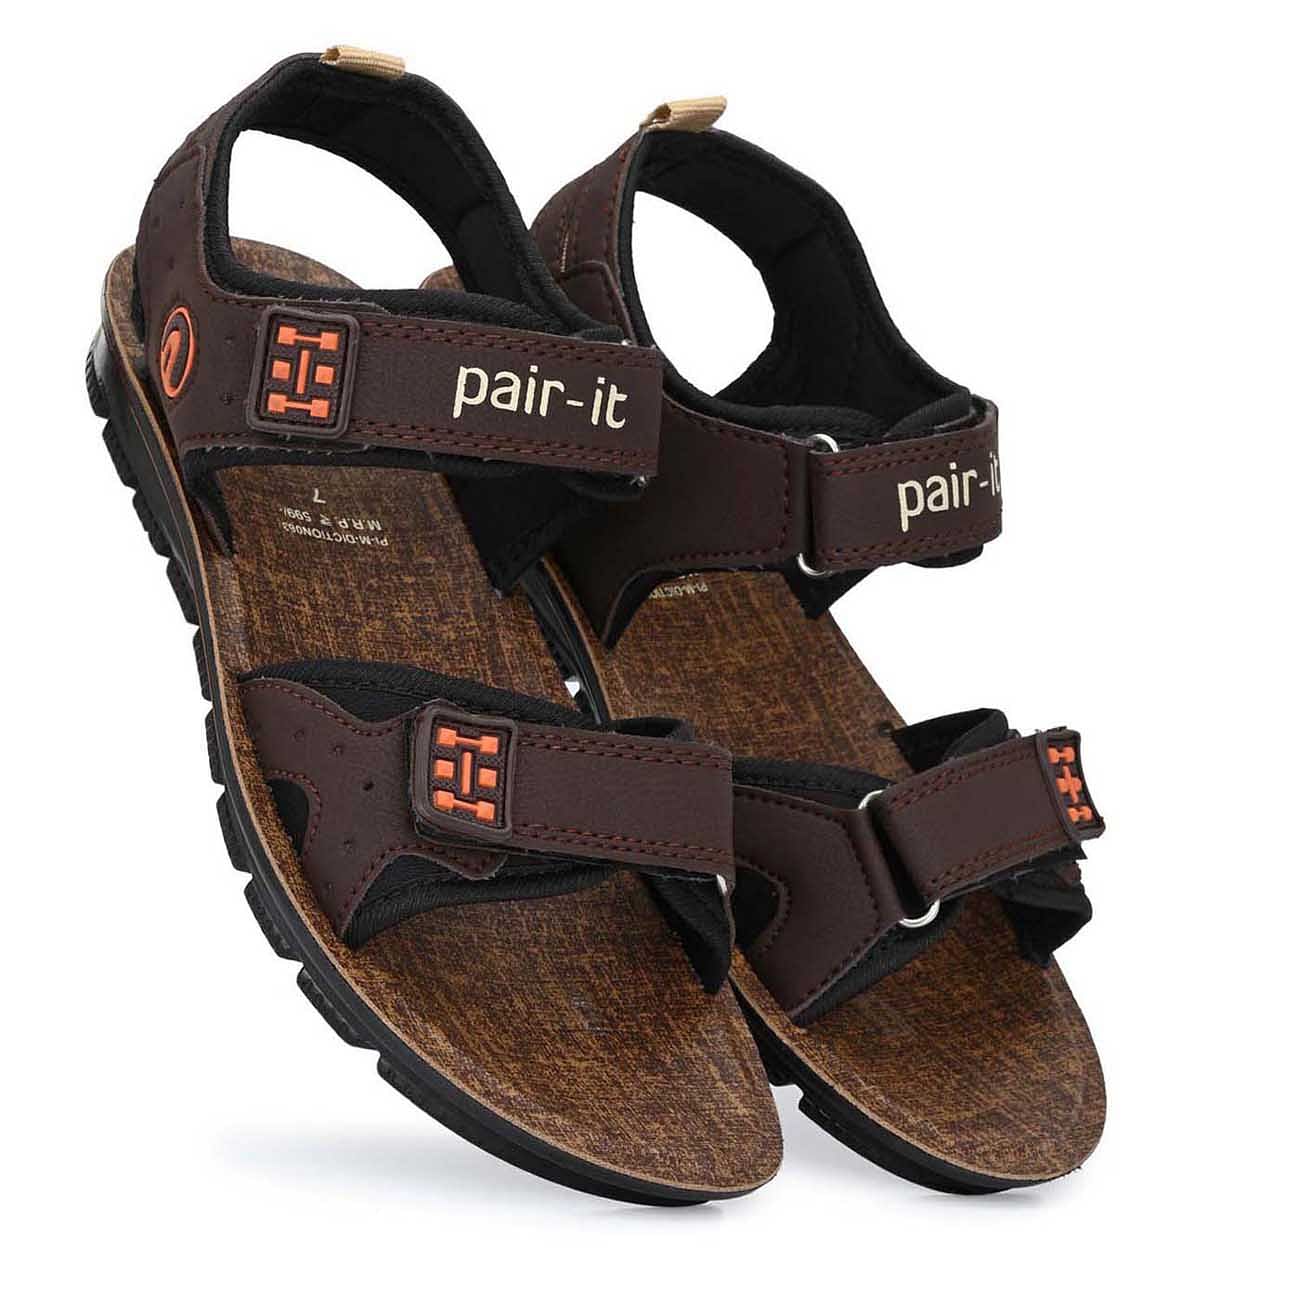 Pair-it Men's PU Sandals -  DICTION063 - Brown